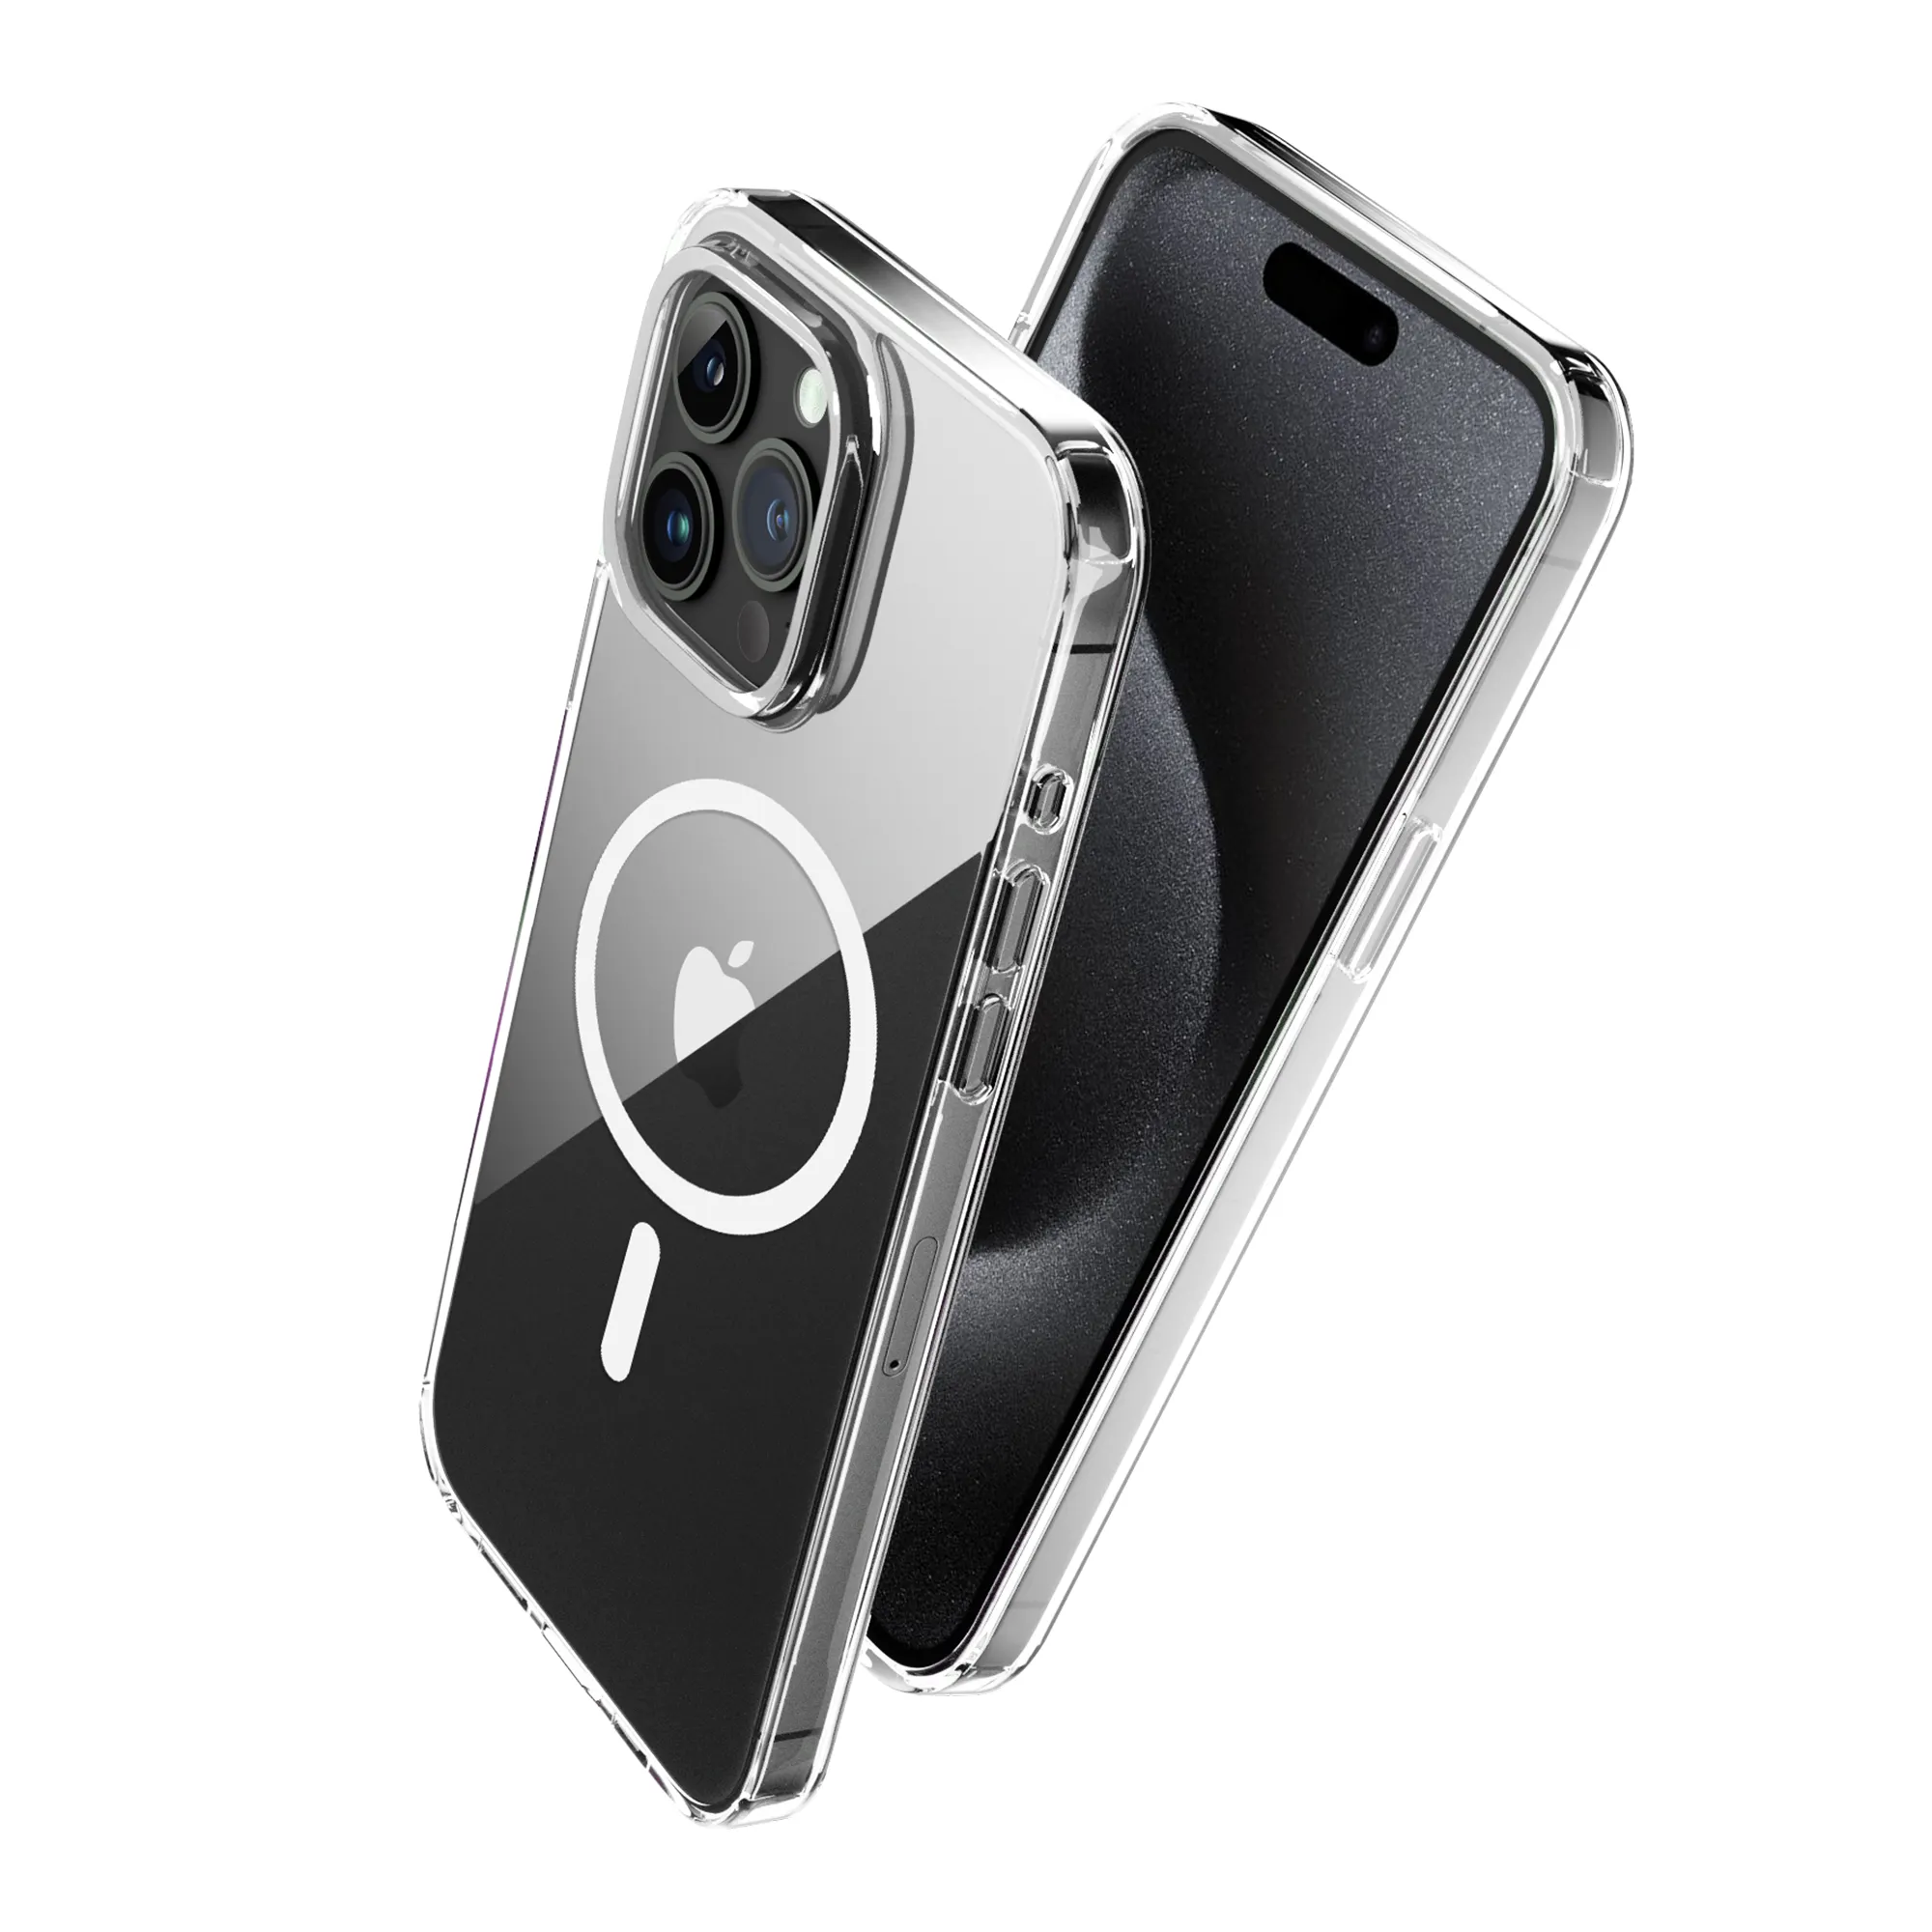 Casing ponsel magnetis untuk iPhone15 Pro, casing ponsel magnetis antiguncangan bening bahan Tpu Pc grosir, casing penutup ponsel magnetis untuk iPhone 15 16 Pro Max